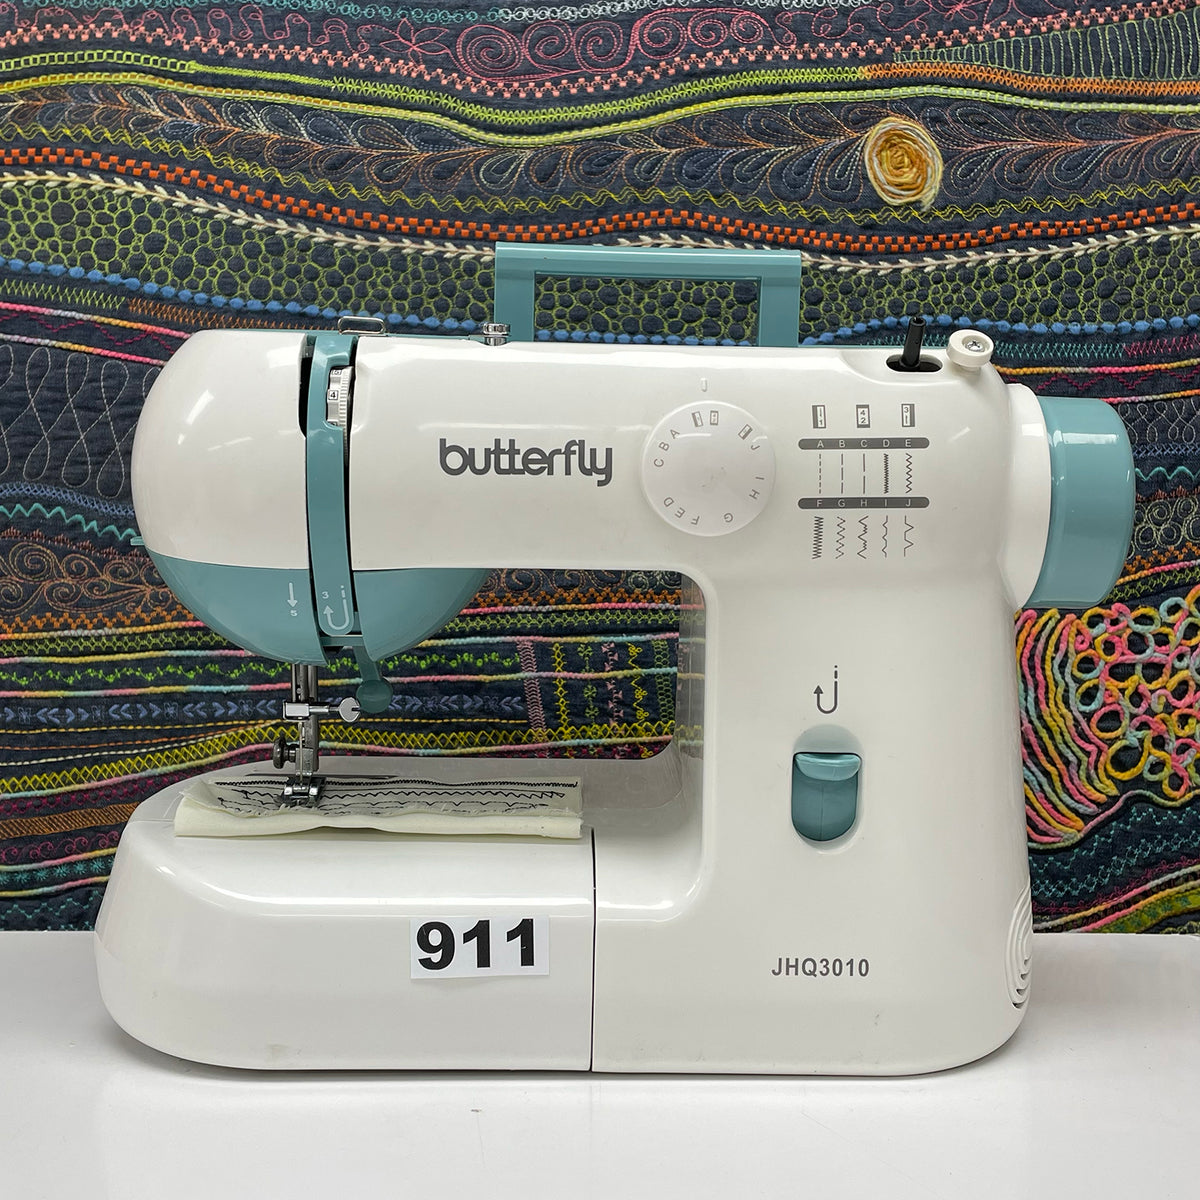 Máquina de coser Butterfly JHQ3010 (Segunda Selección N911)